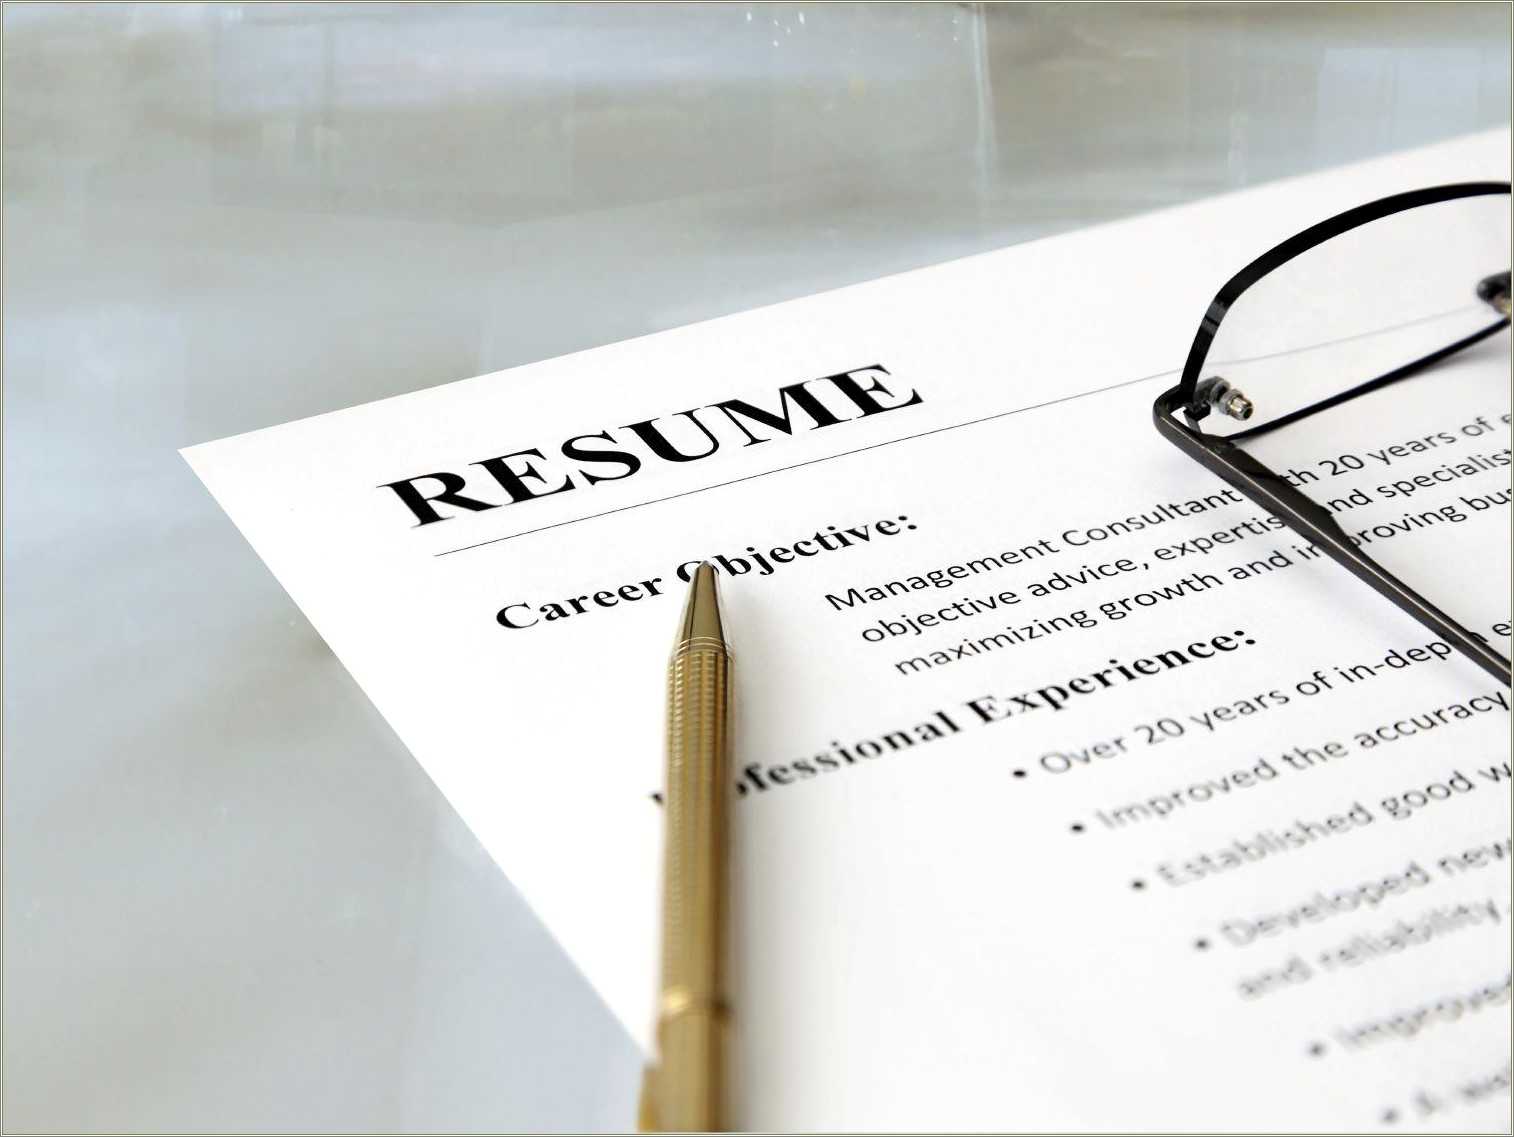 Objective For Job Seeker In Resume